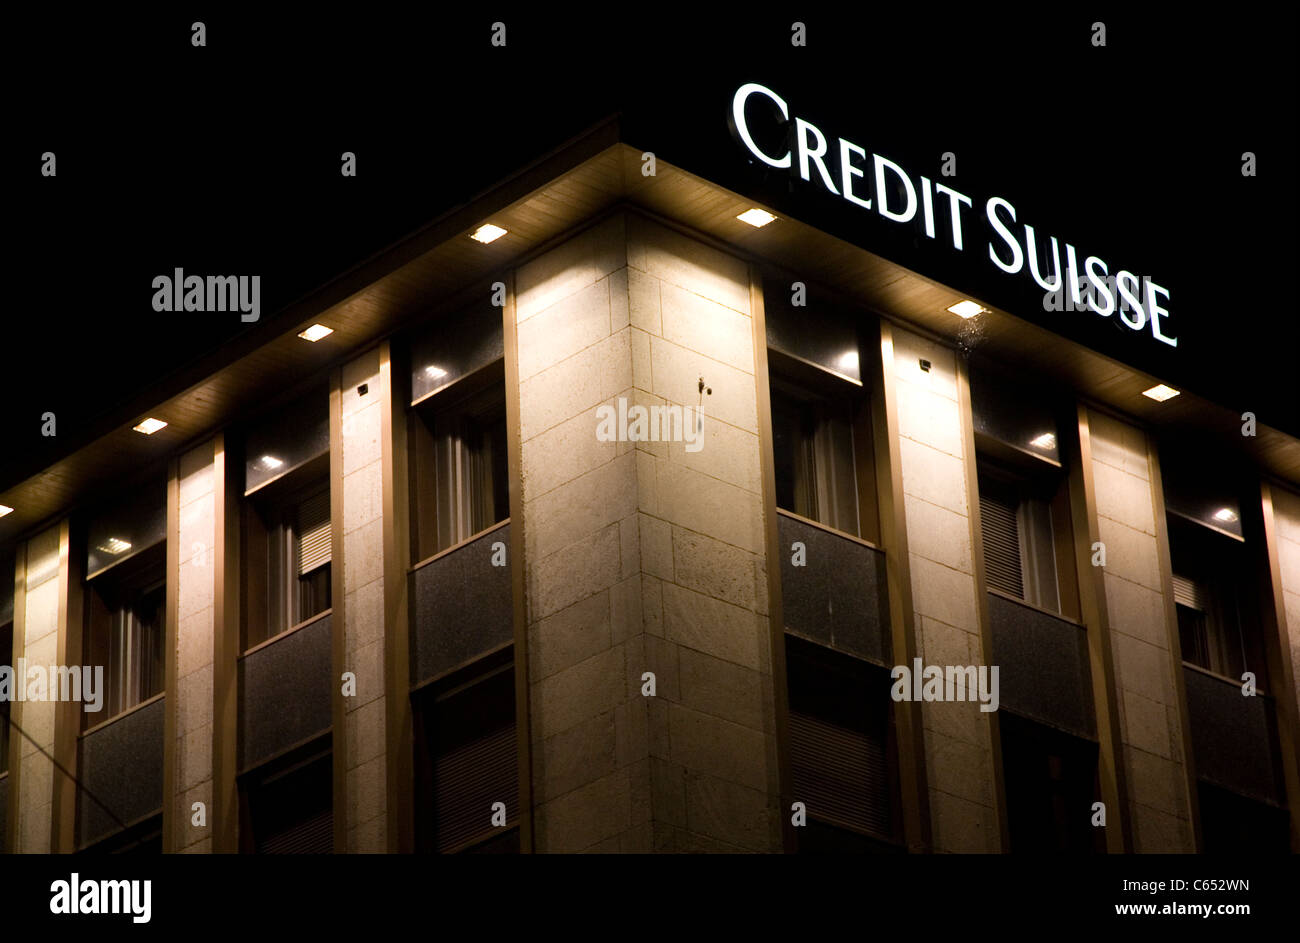 Credit Suisse Building in Geneva Stock Photo